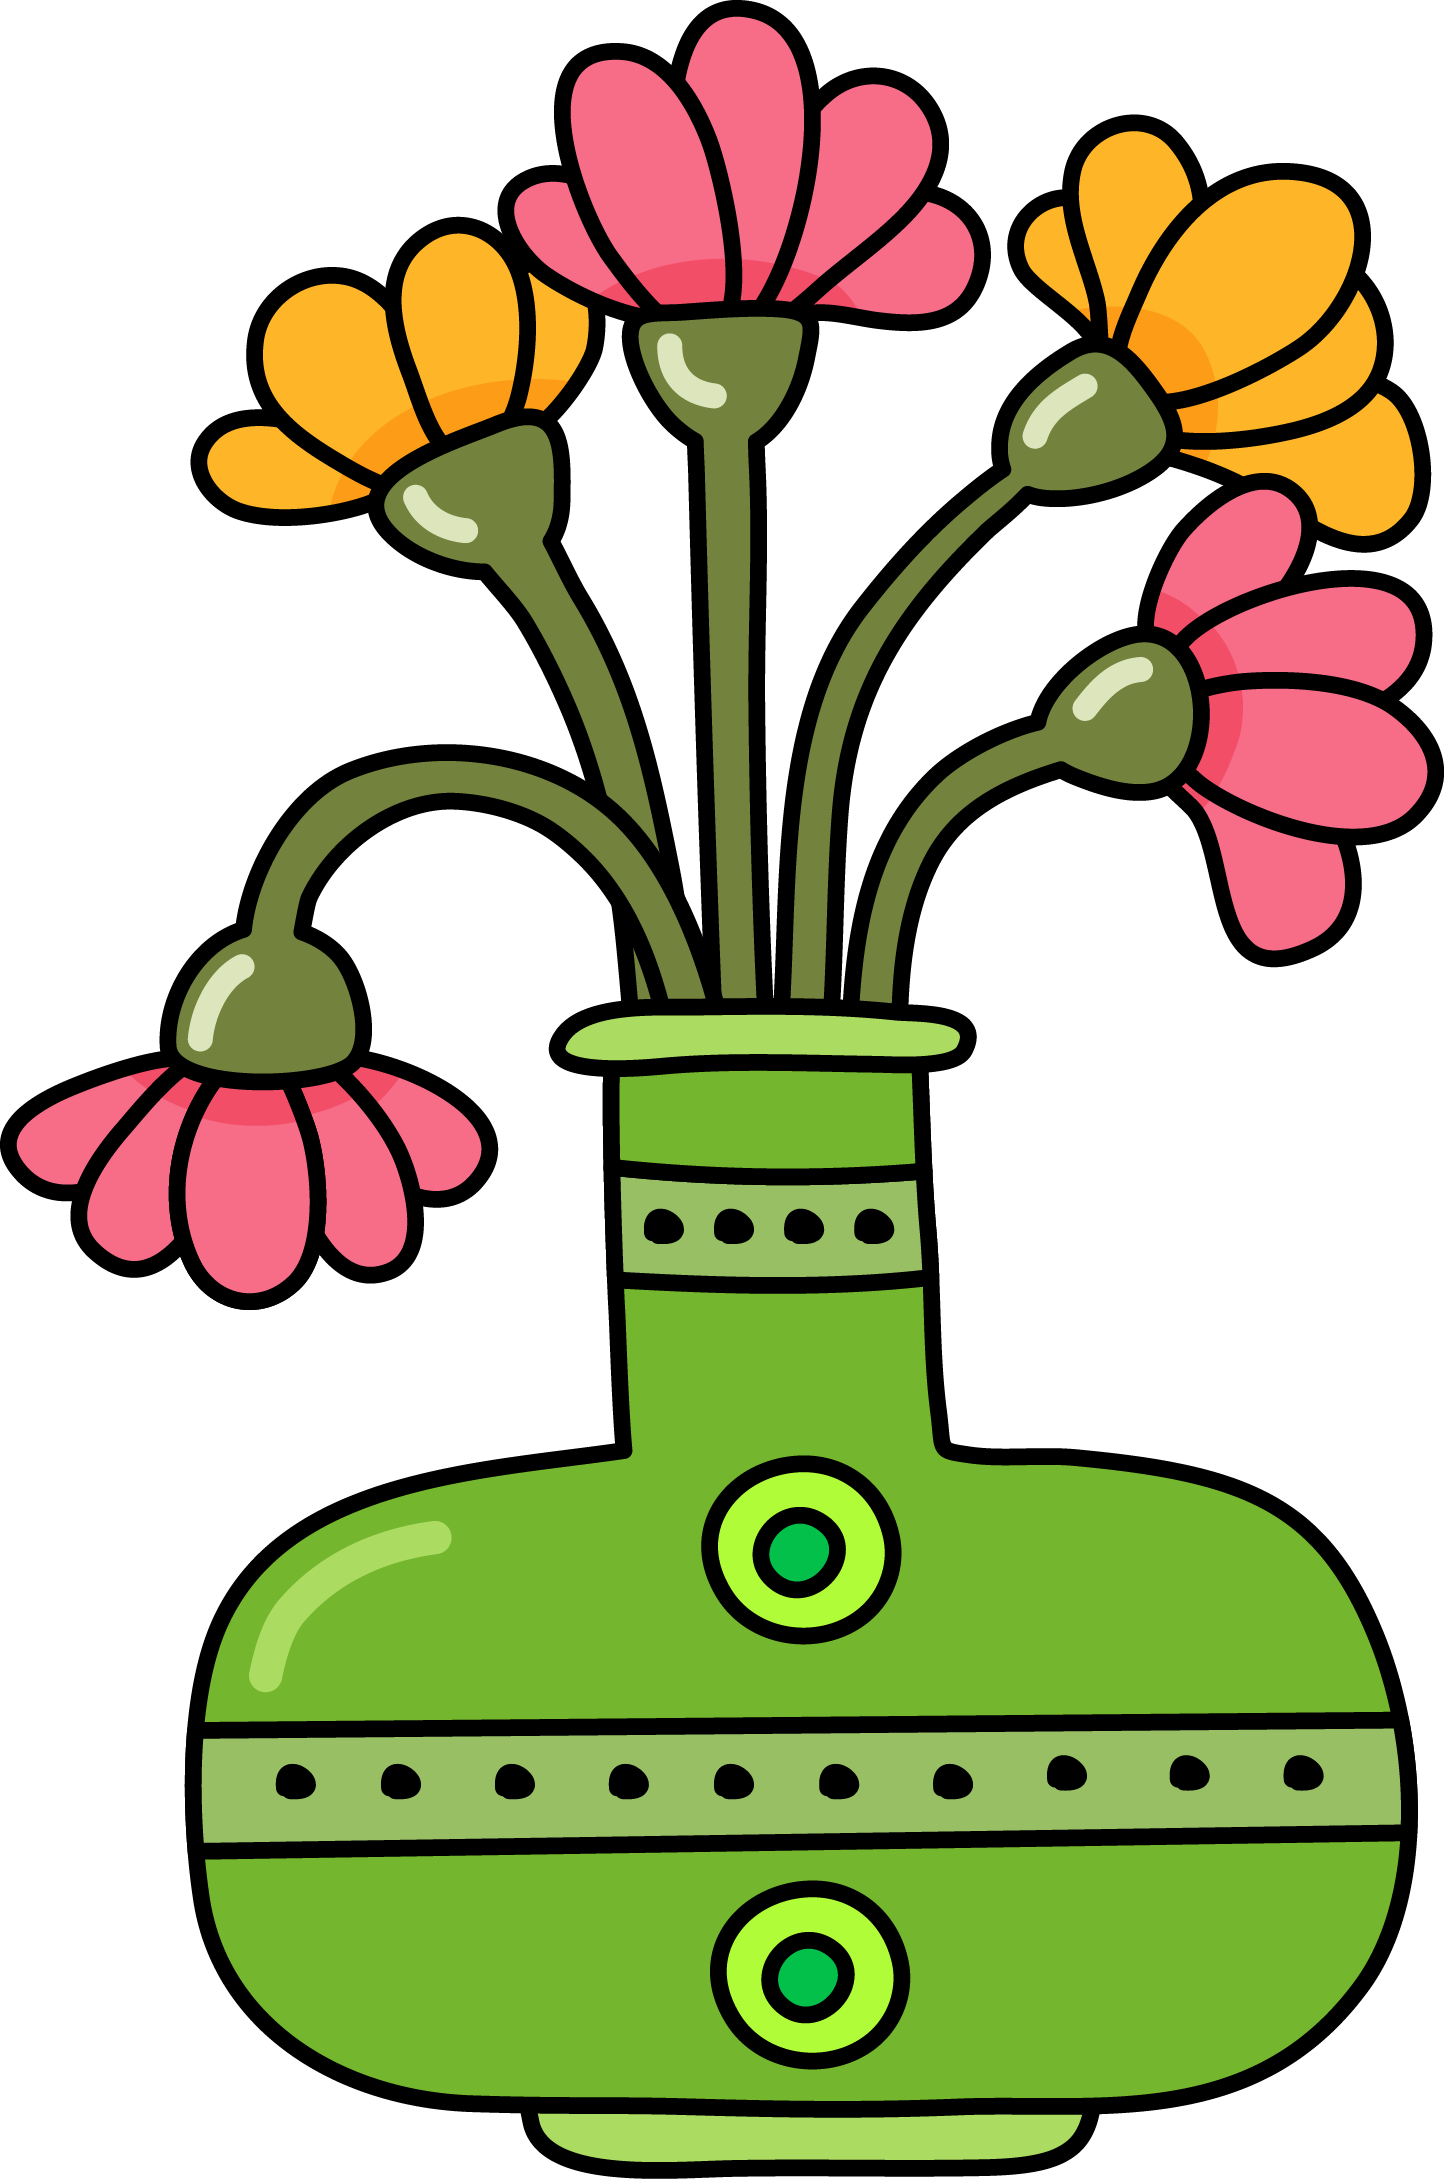 Flowerscolor - Digital Stamp (1444x2179)